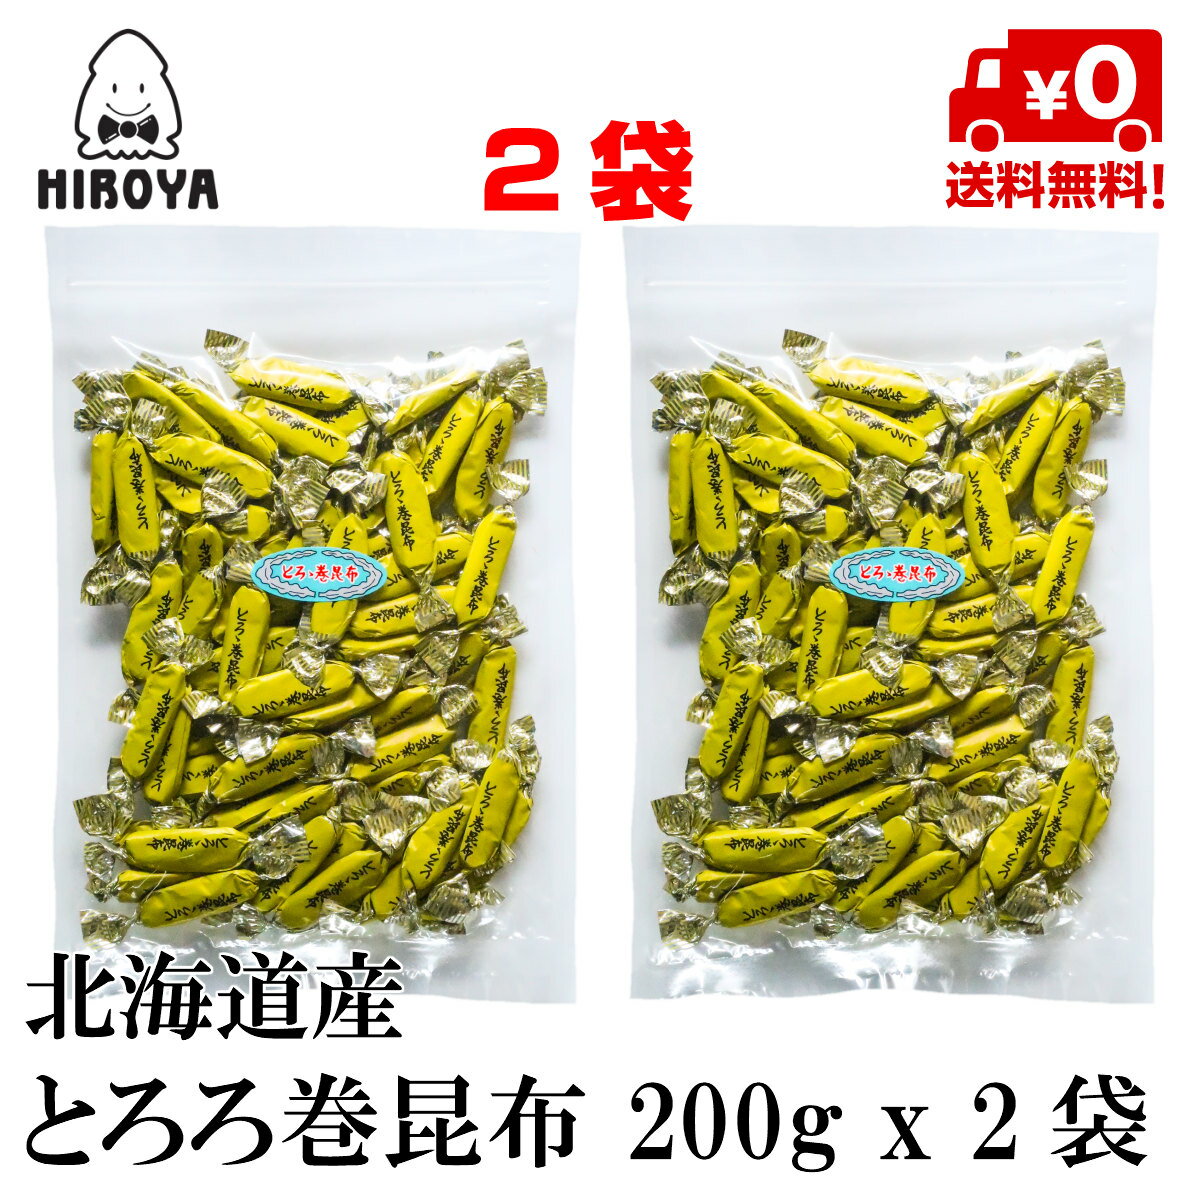 昆布 北海道產 薯蕷卷昆布 200g x 2包 夾鏈袋裝 日本必買 | 日本樂天熱銷